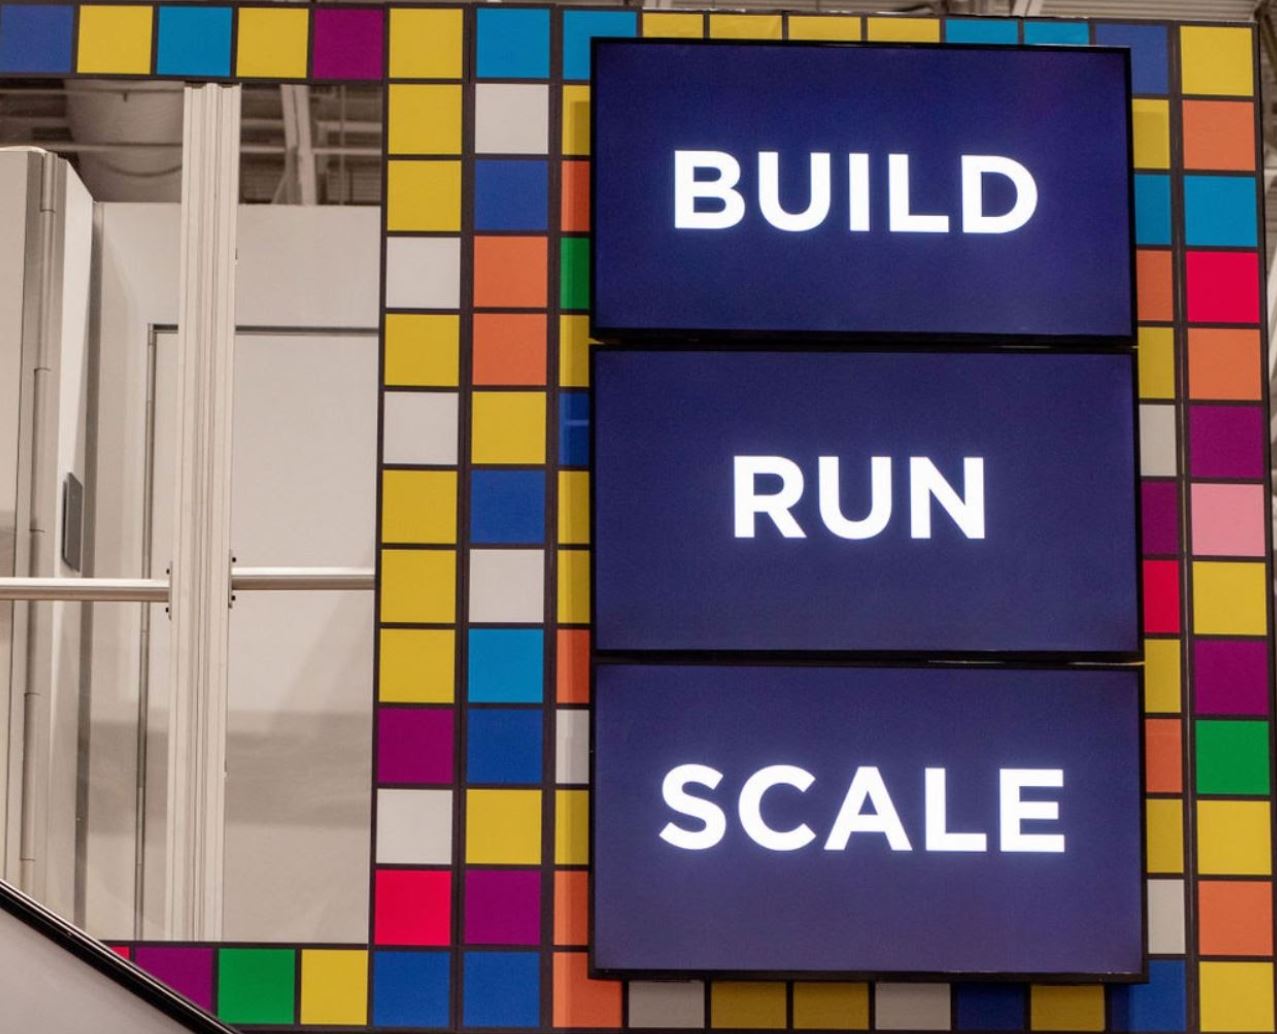 Build run scale